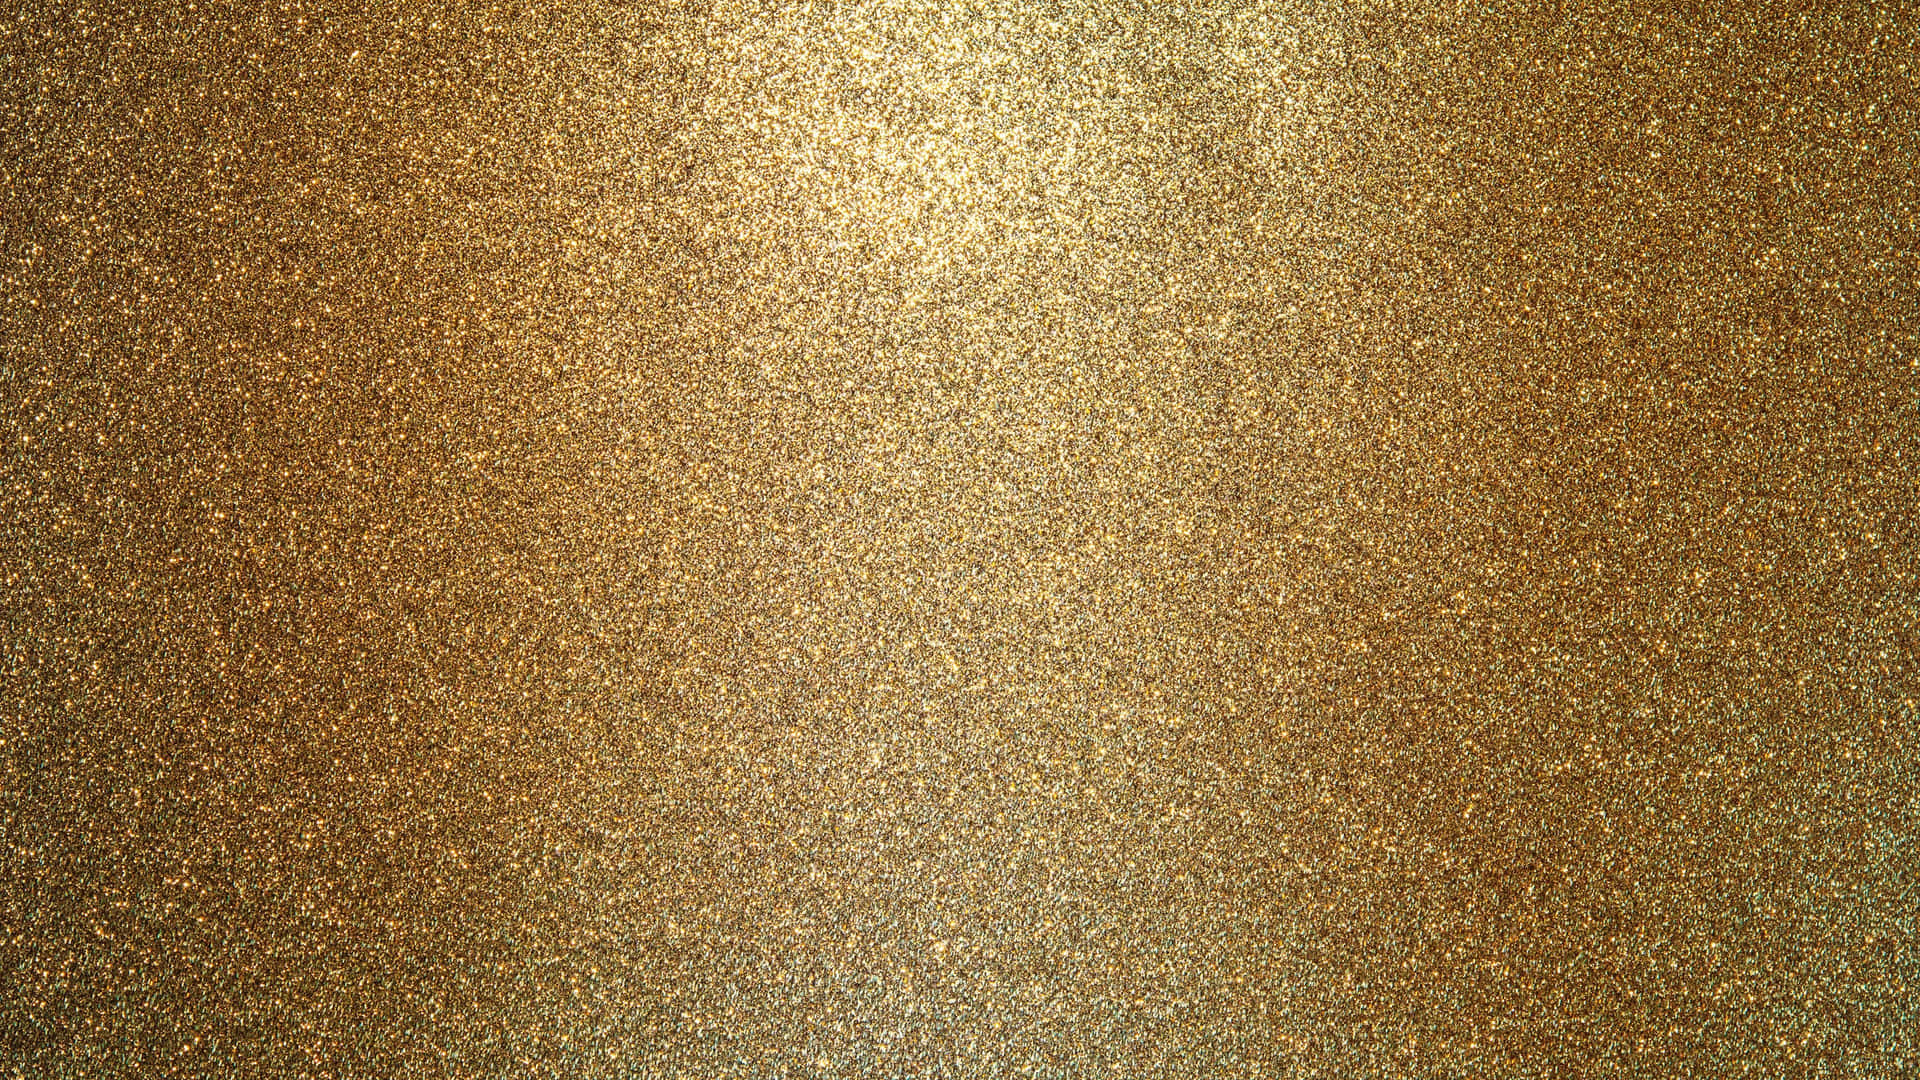 Guldglittermikropartikelbild